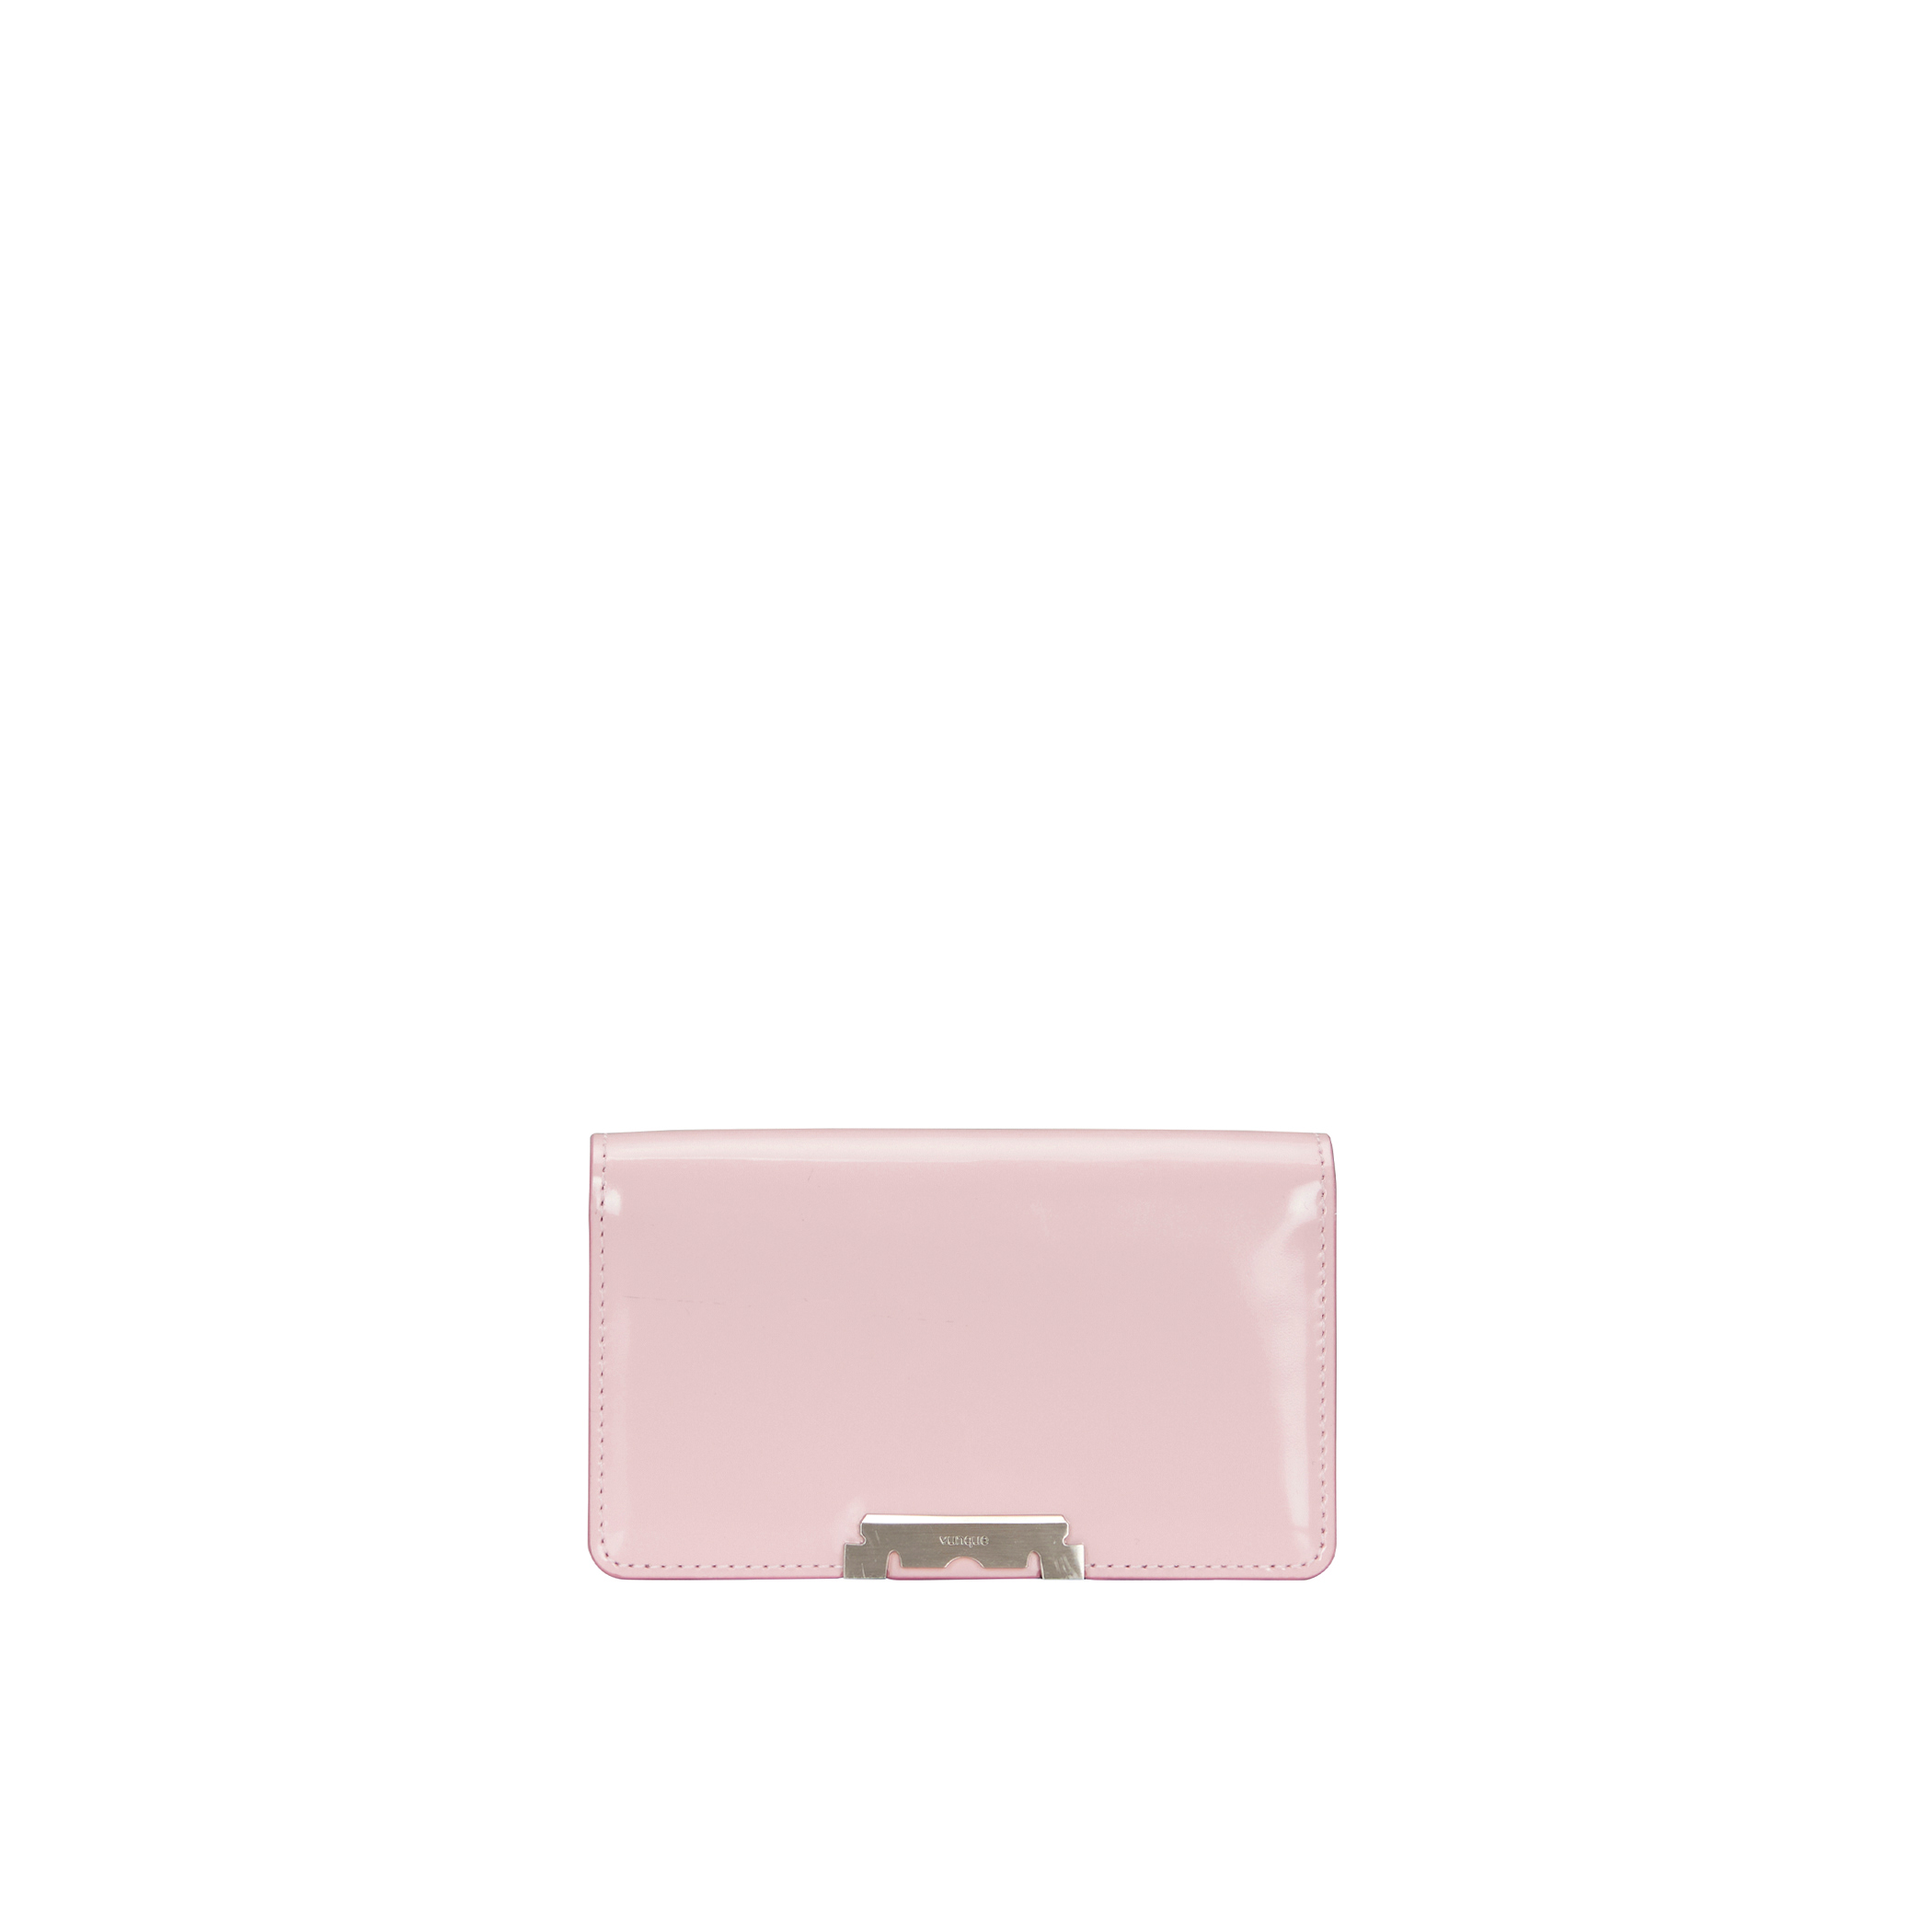 Perfec Crop Card Wallet (퍼펙 크롭 카드지갑) Pale Pink